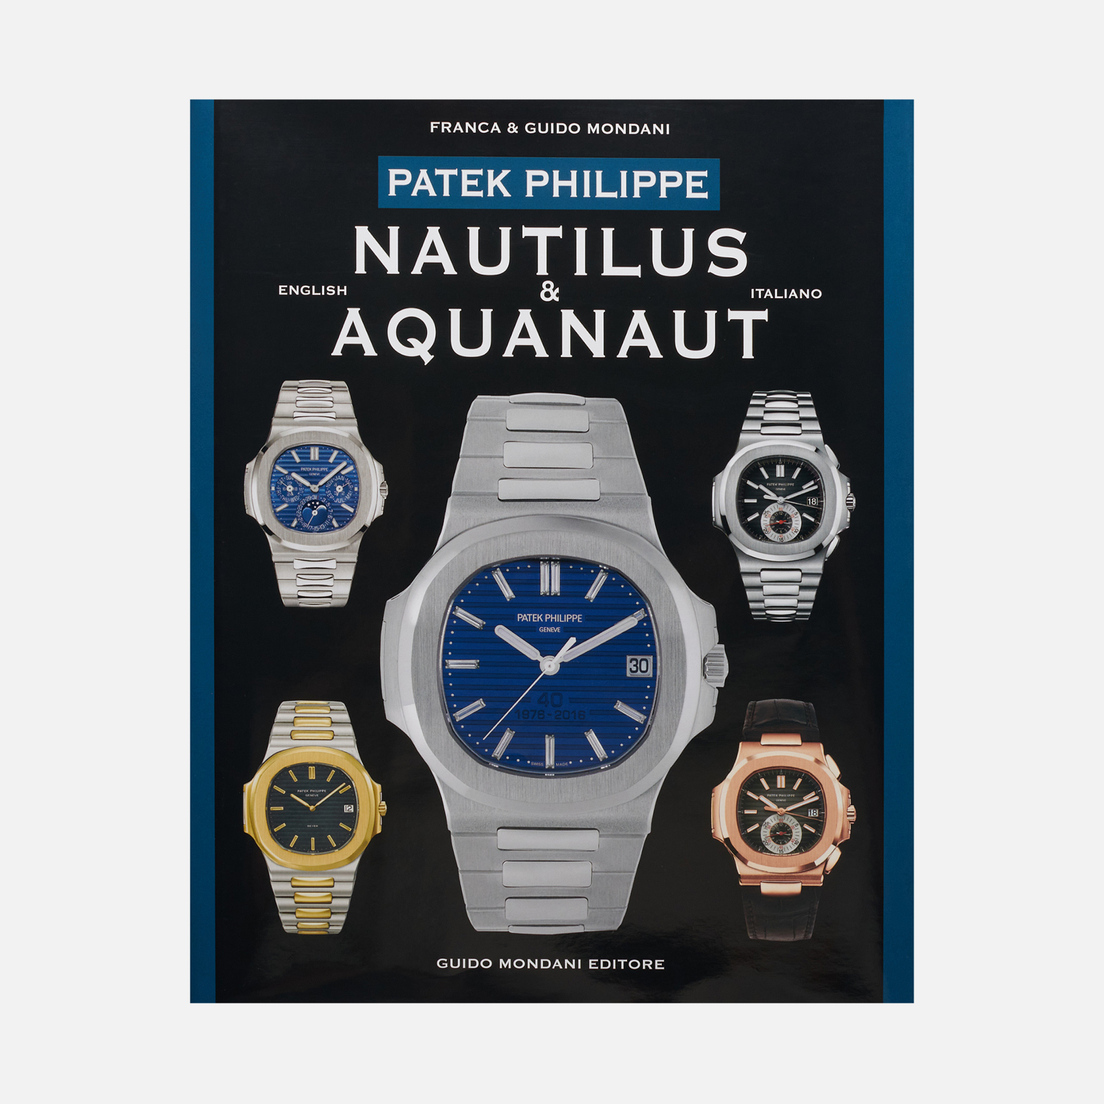 Guido Mondani Editore Книга Patek Philippe Nautilus And Aquanaut